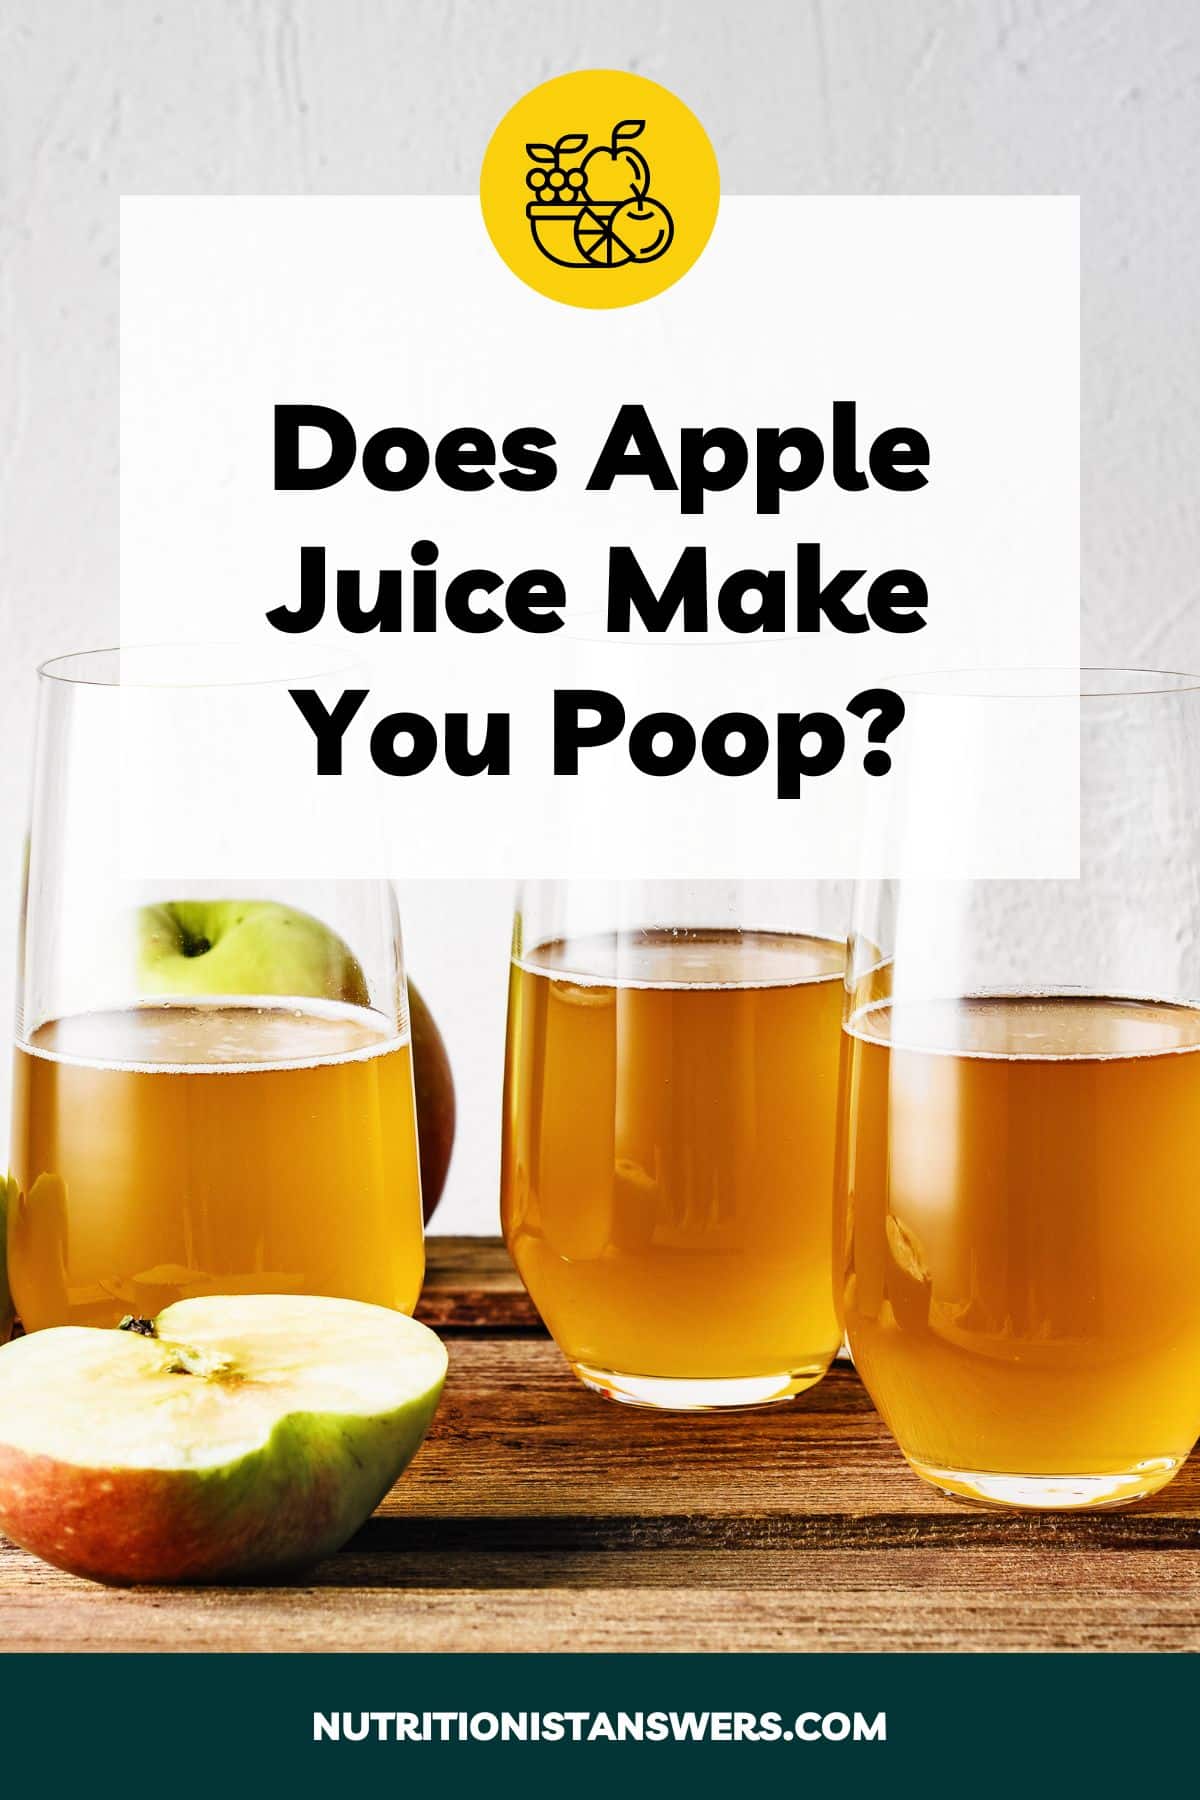 Does Apple Juice Make You Poop?